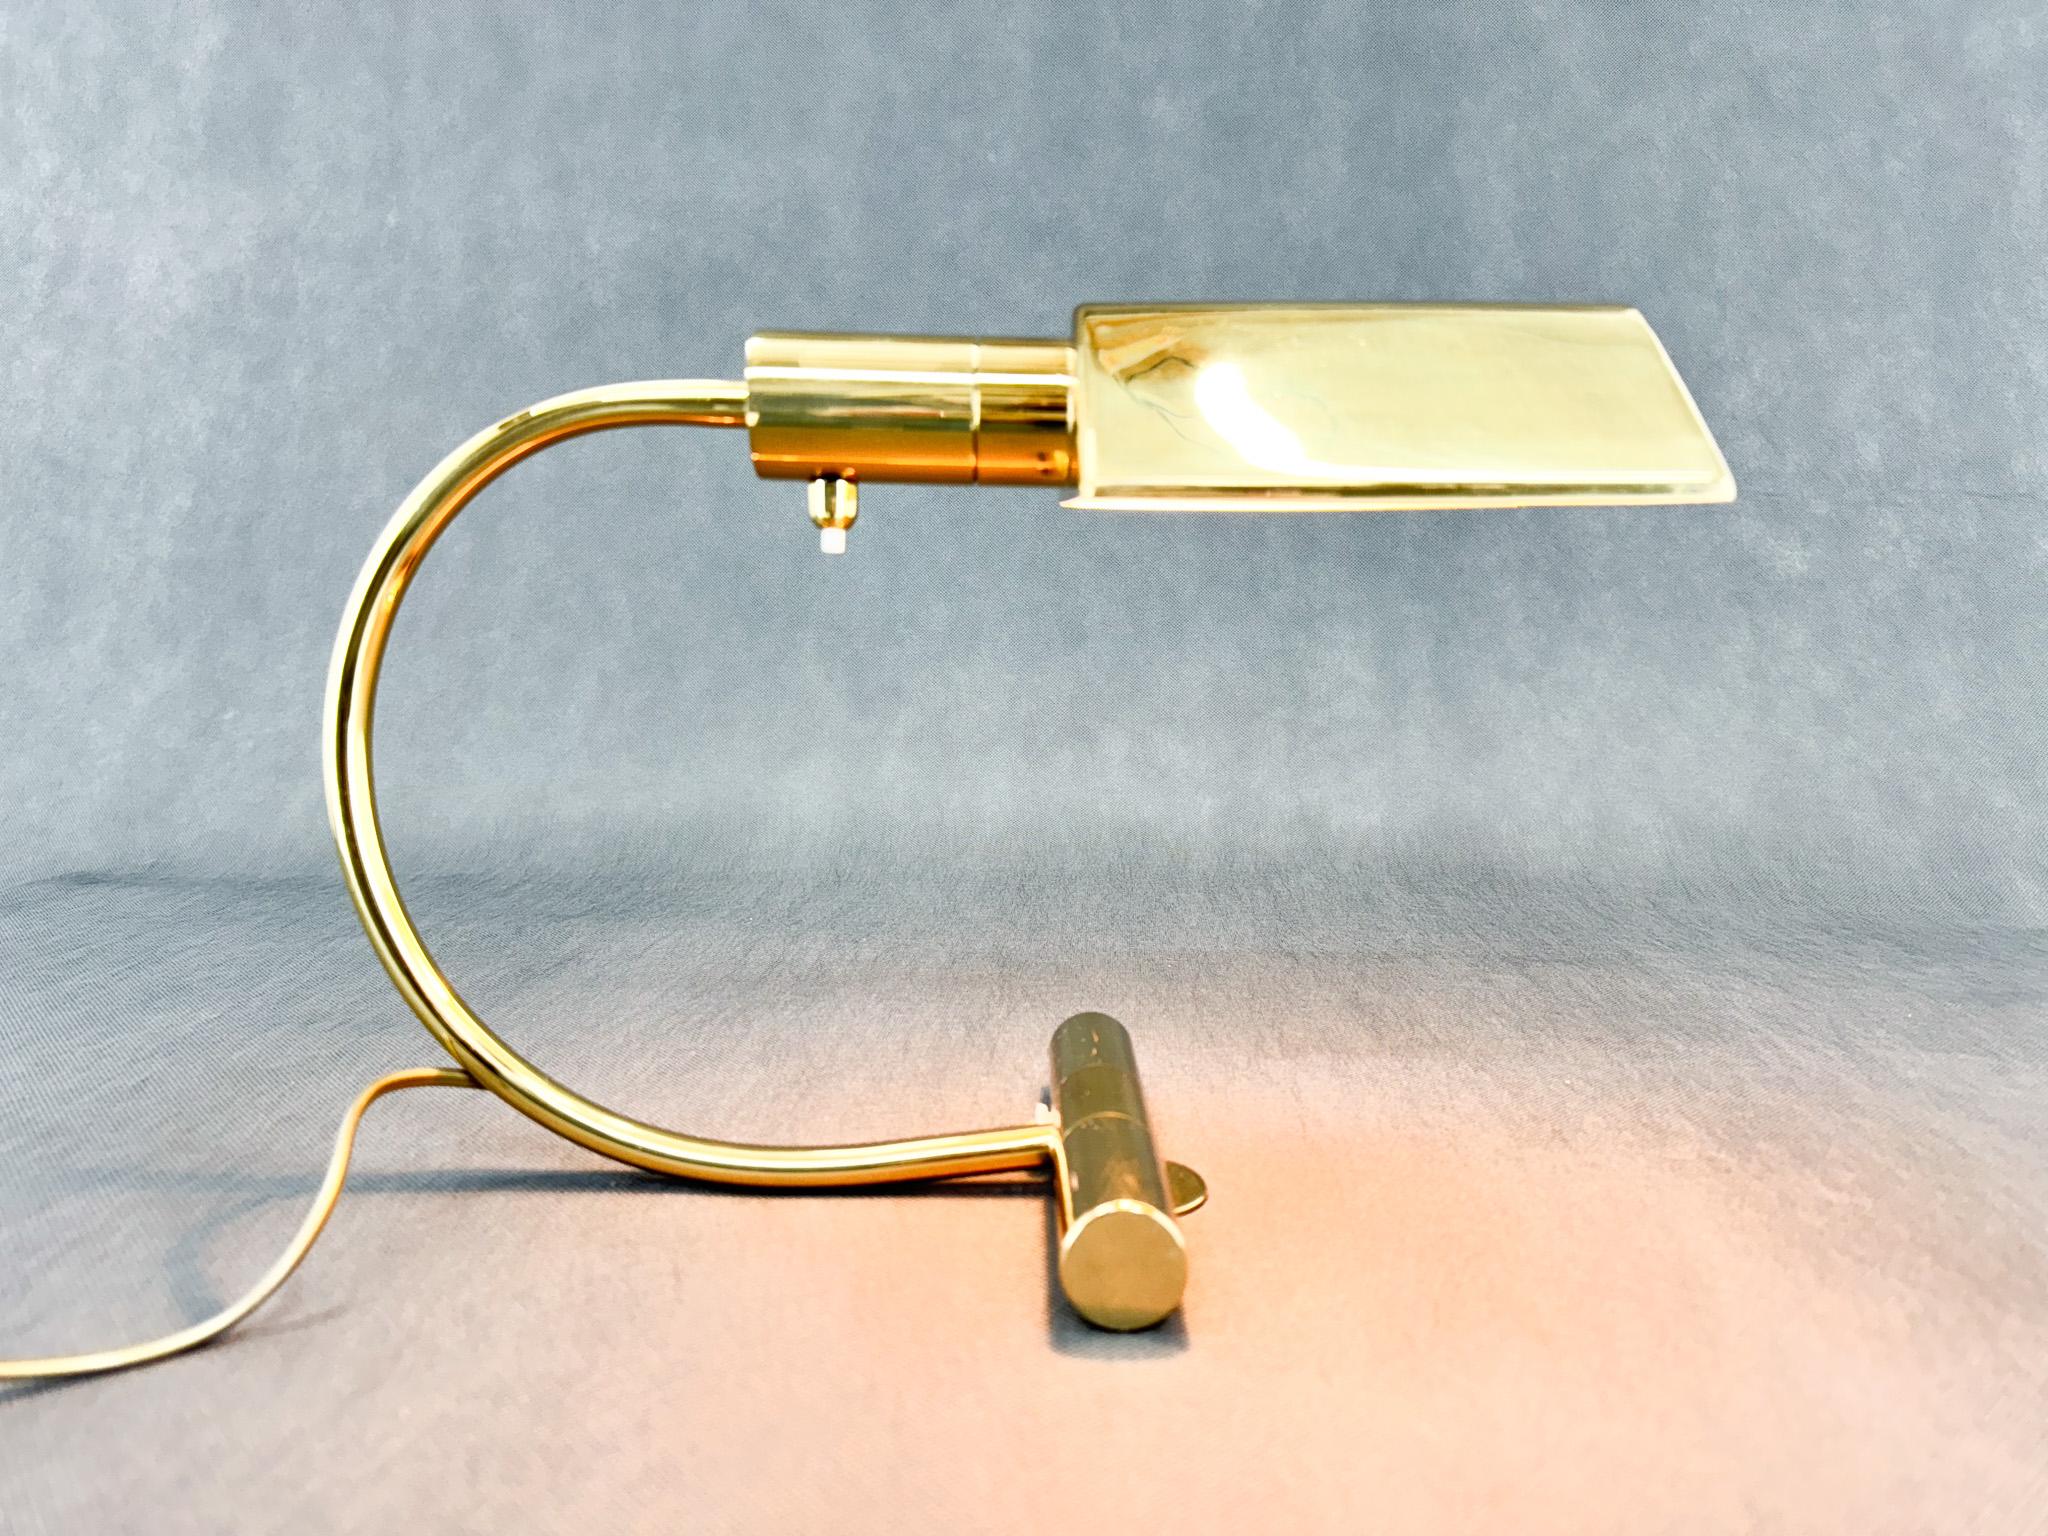 Vintage Tisch- oder Schreibtischlampe aus vermessingtem Metall. Produziert in Belgien in den 1970er Jahren. Glühbirne: 1 x E14. Inklusive US-Adapter.

